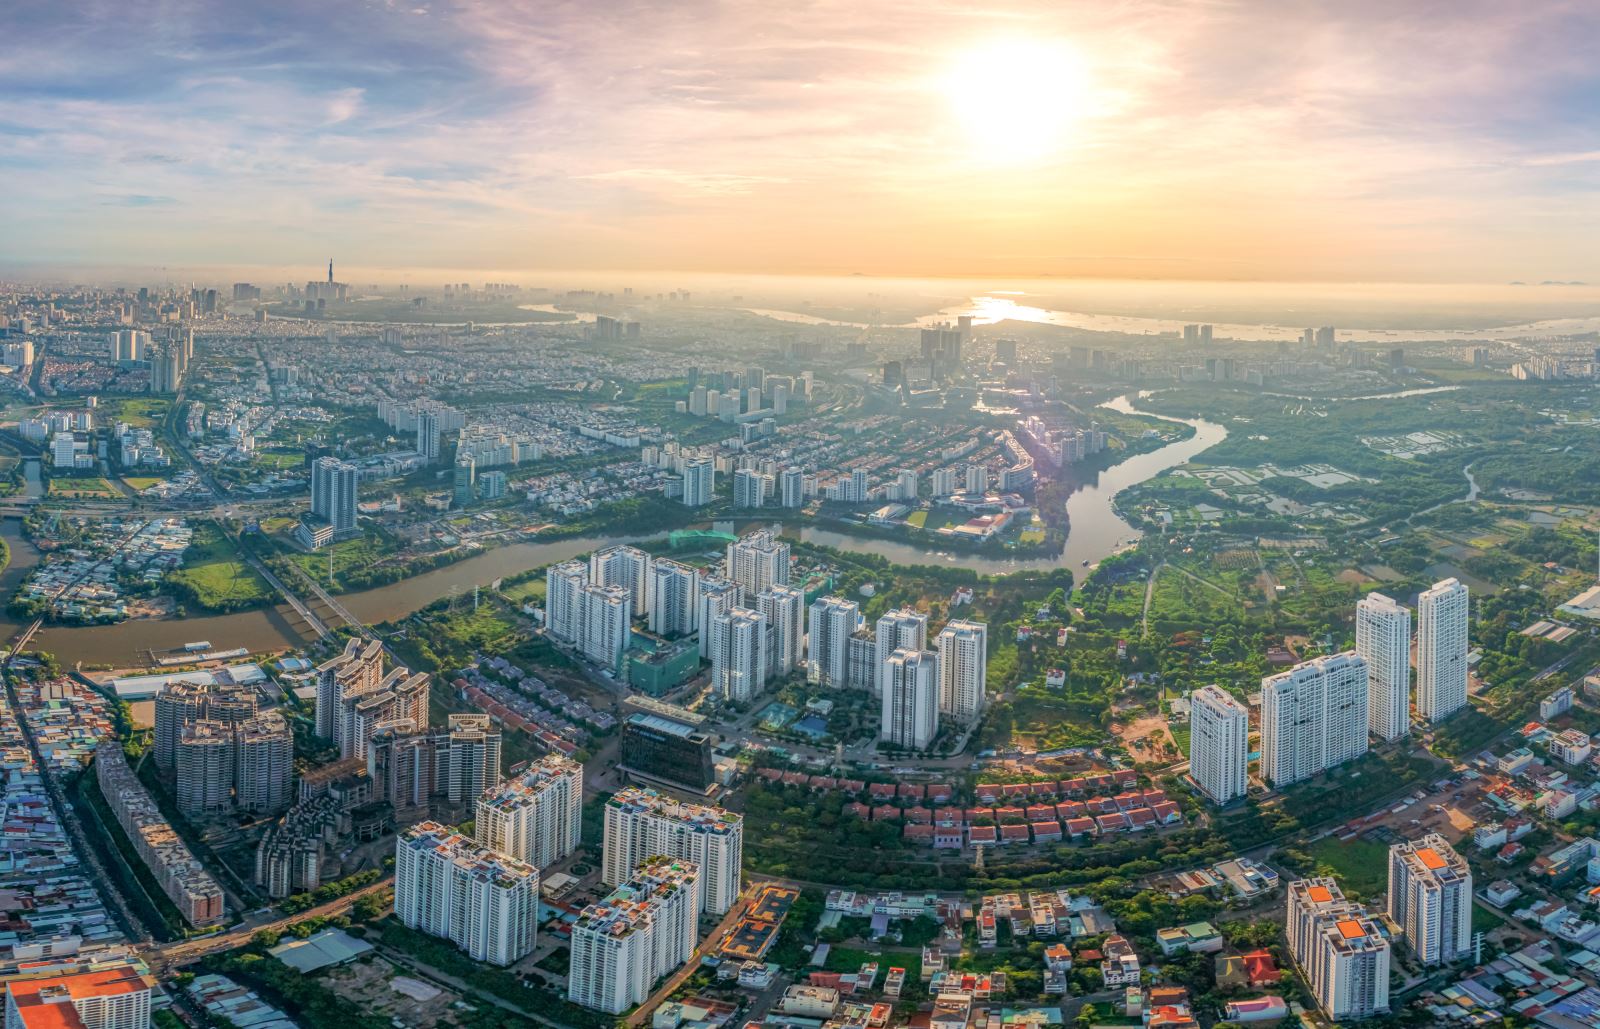 Sóng bất động sản Nam Sài Gòn – Thiên đường cho những người mua nhà